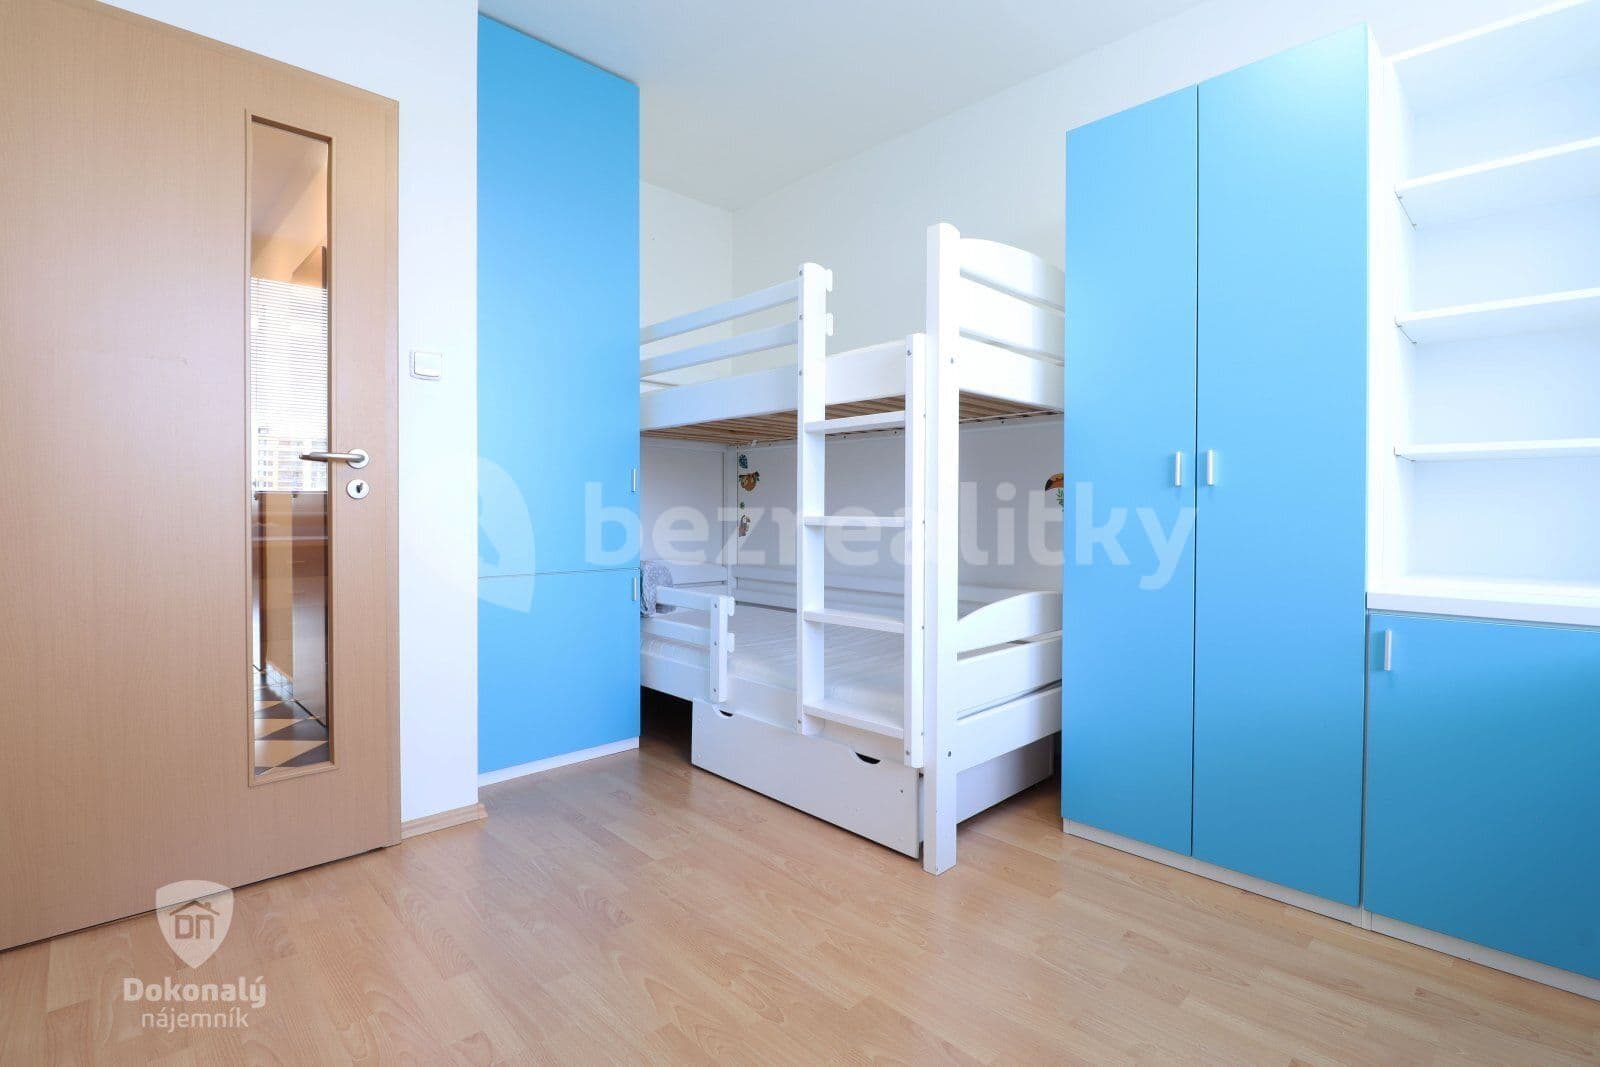 3 bedroom flat to rent, 74 m², Vratislavská, Prague, Prague